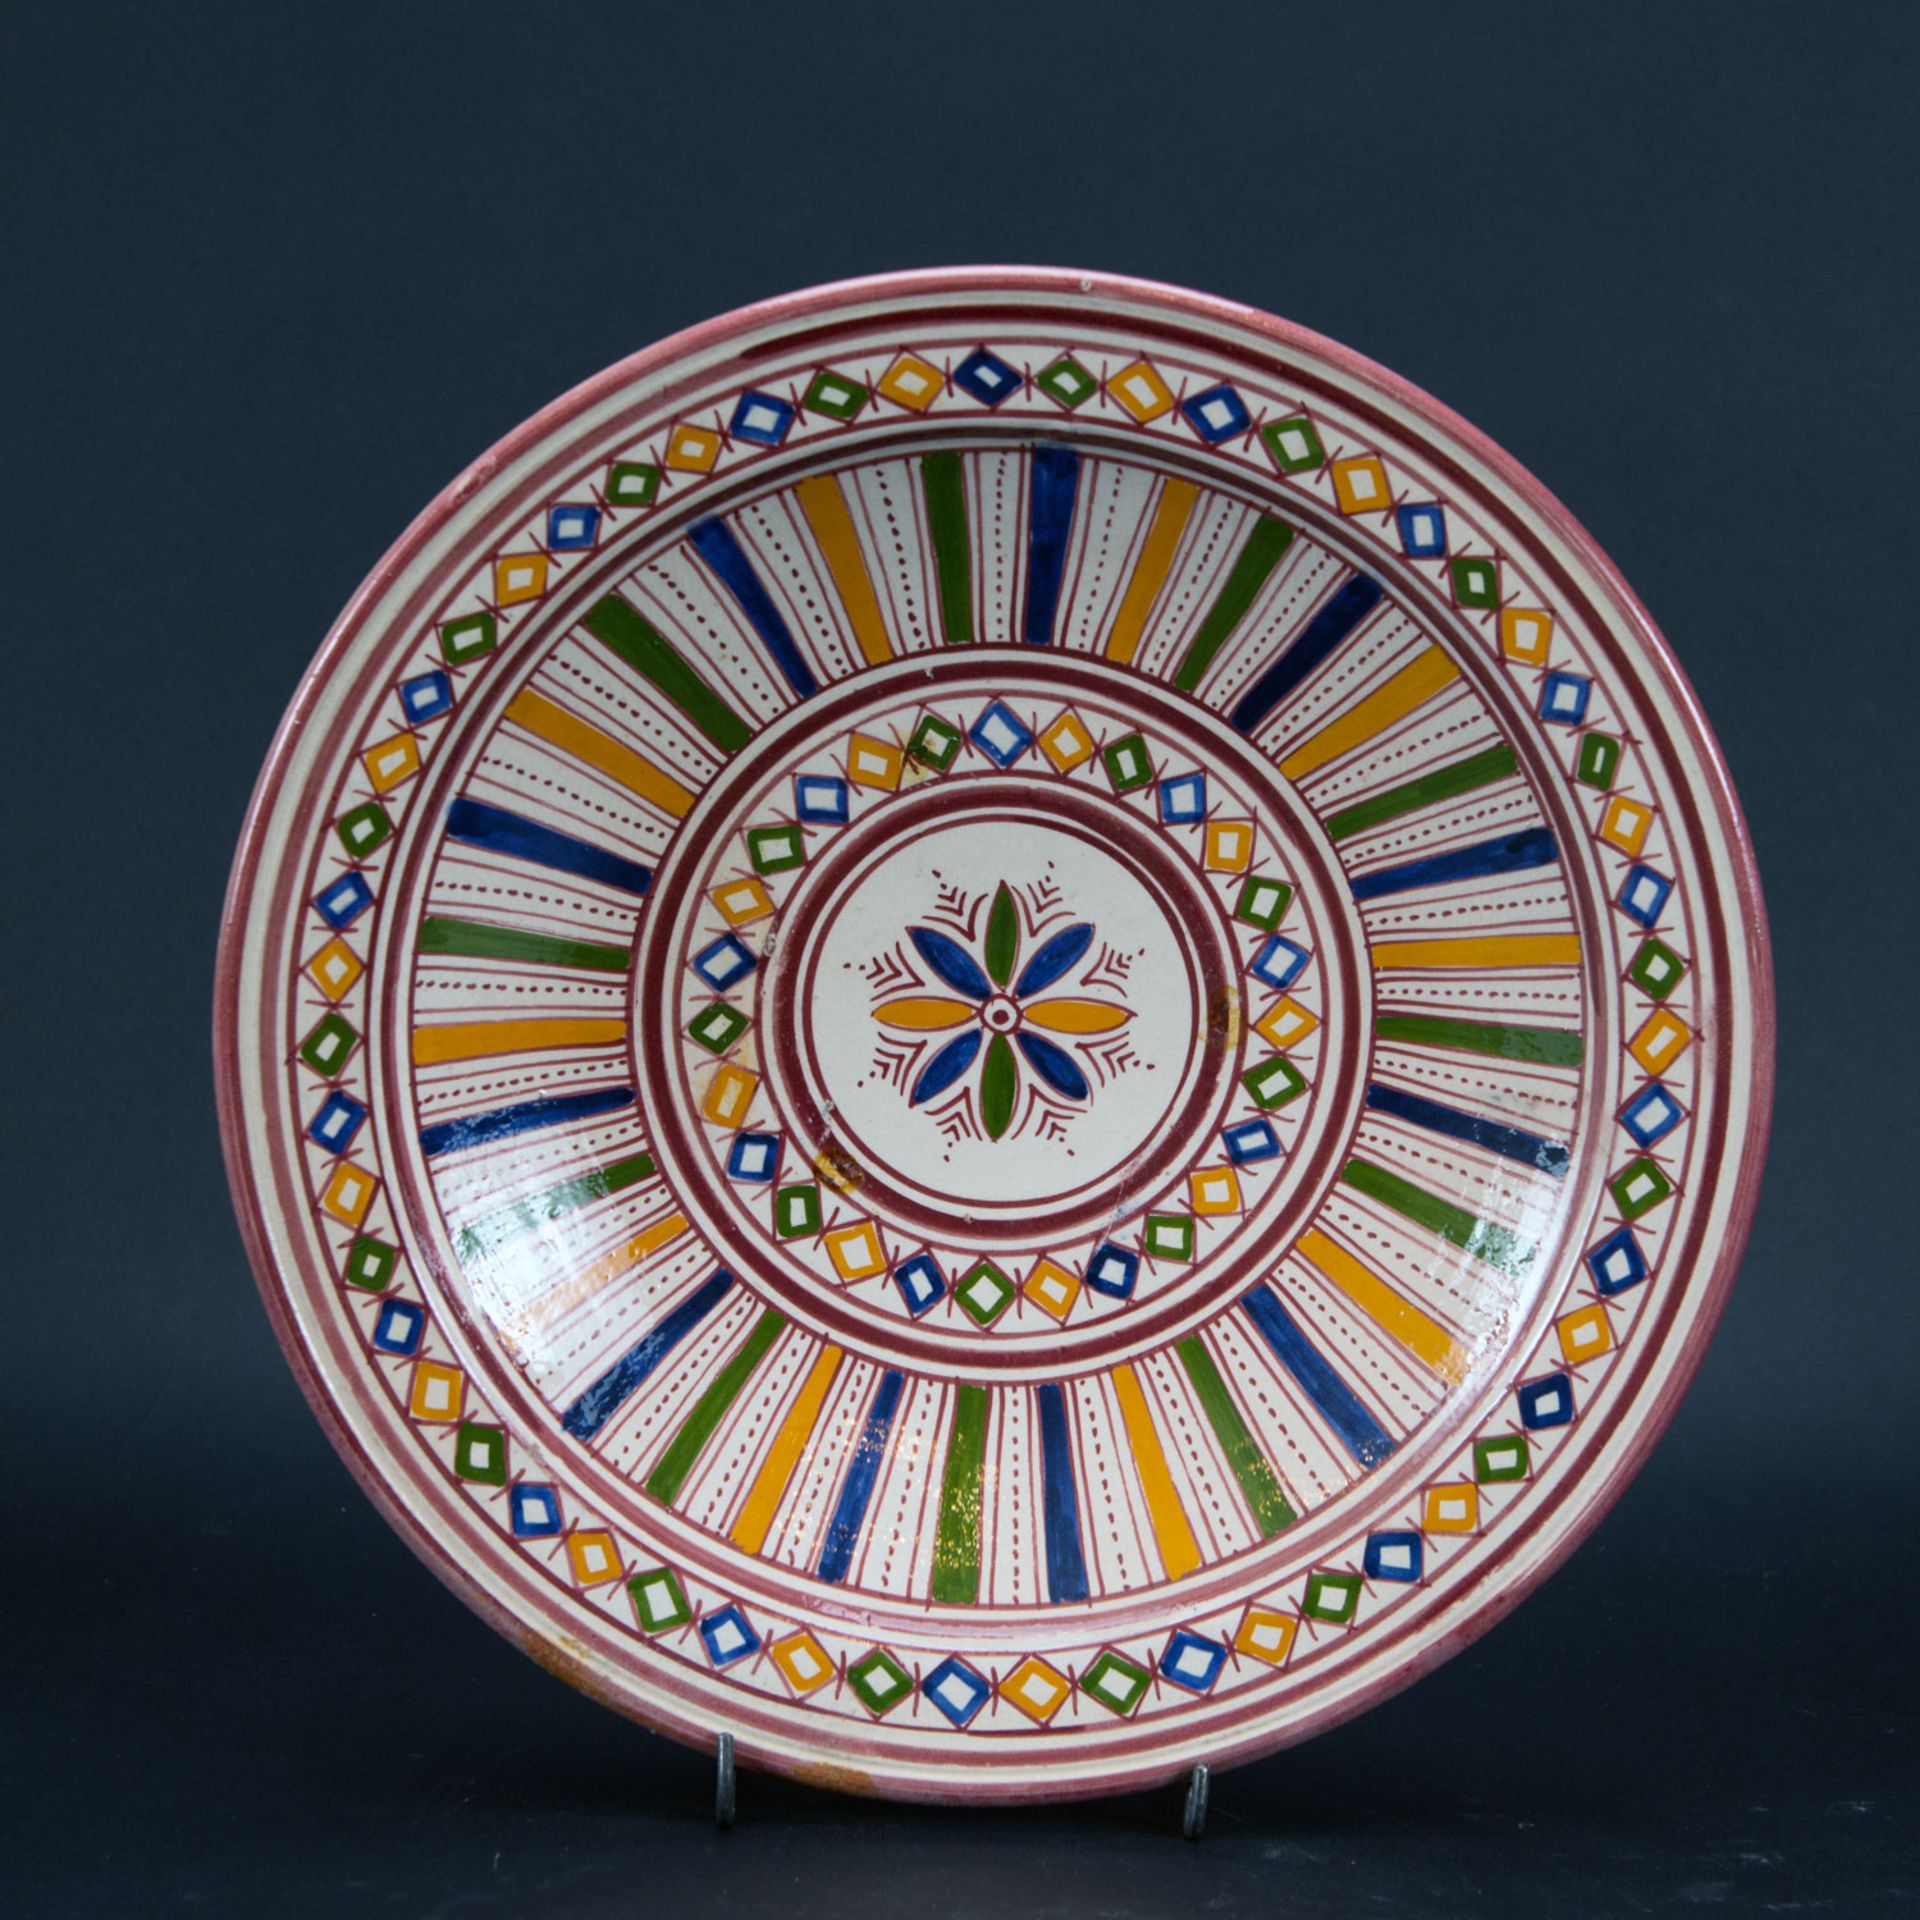 Three Fes Ceramic Plates - Image 2 of 3